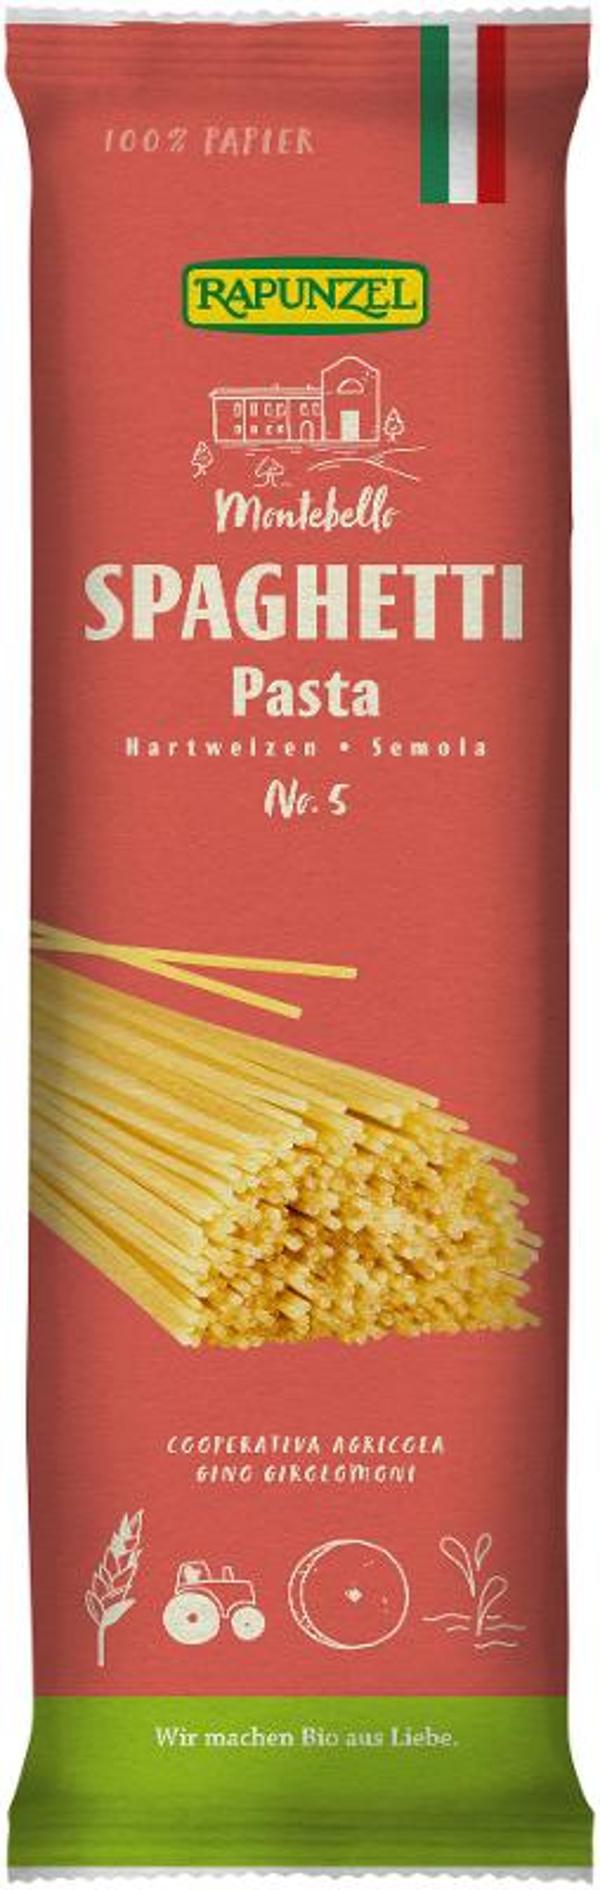 Produktfoto zu Spaghetti semola No.5